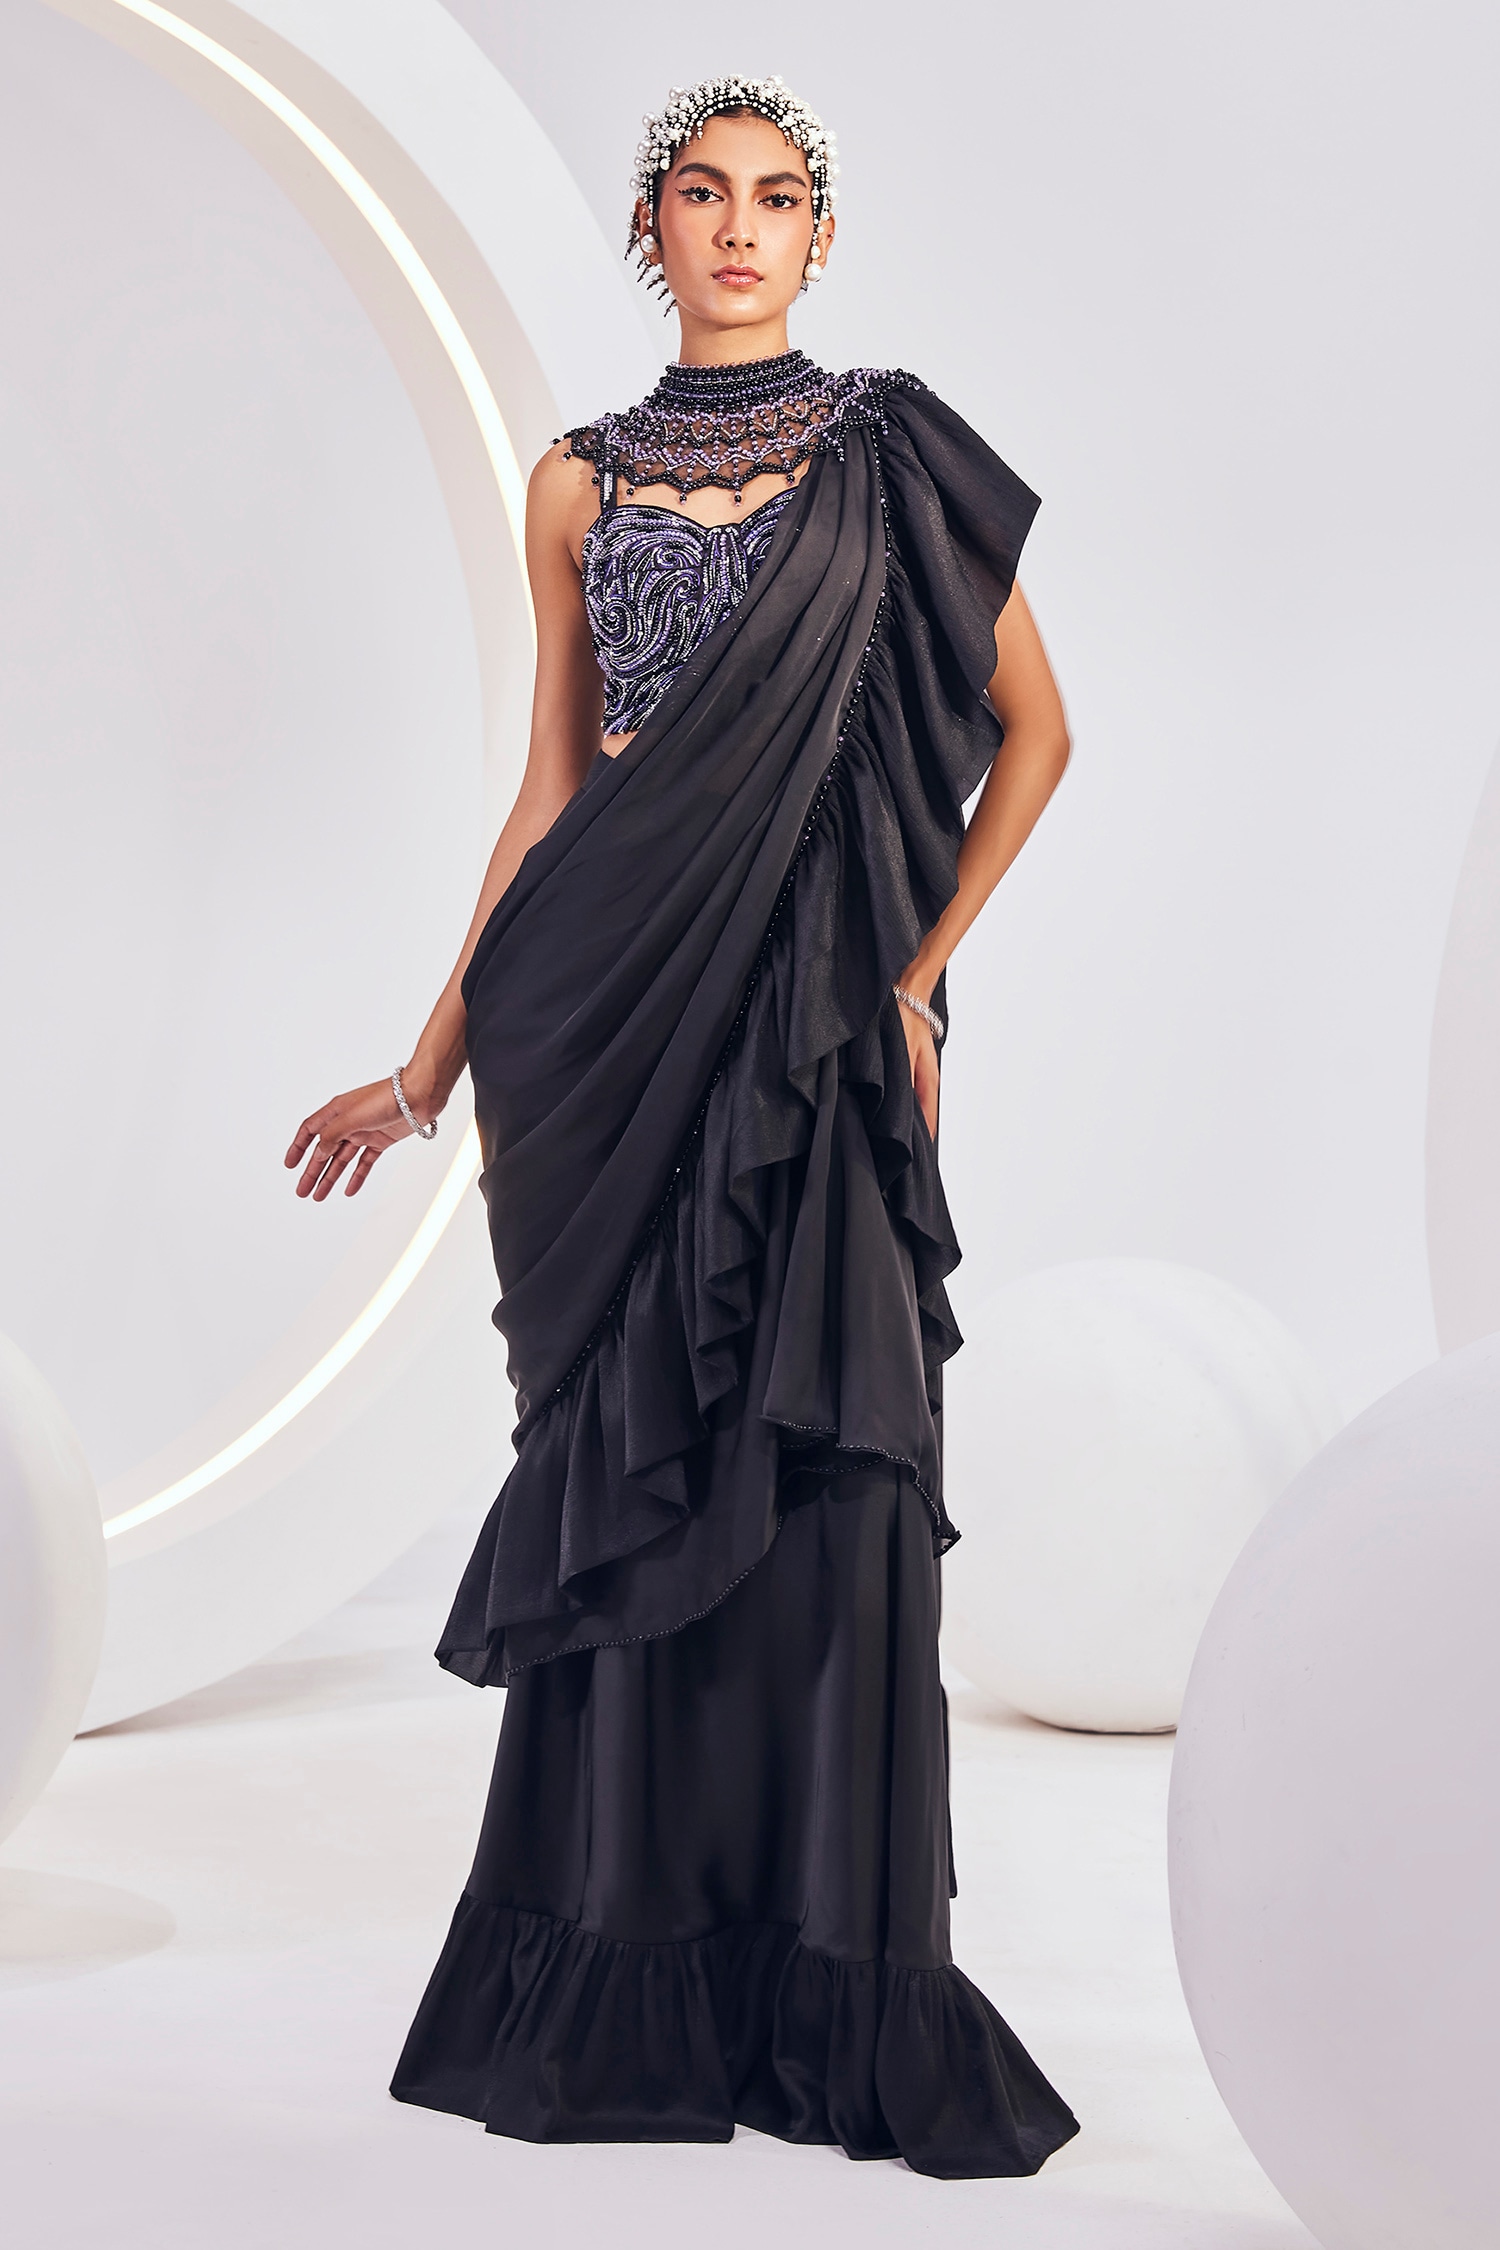 Women Designer Georgette Ruffle Saree With Unstitched Blouse Piece Sari ( Black) | eBay